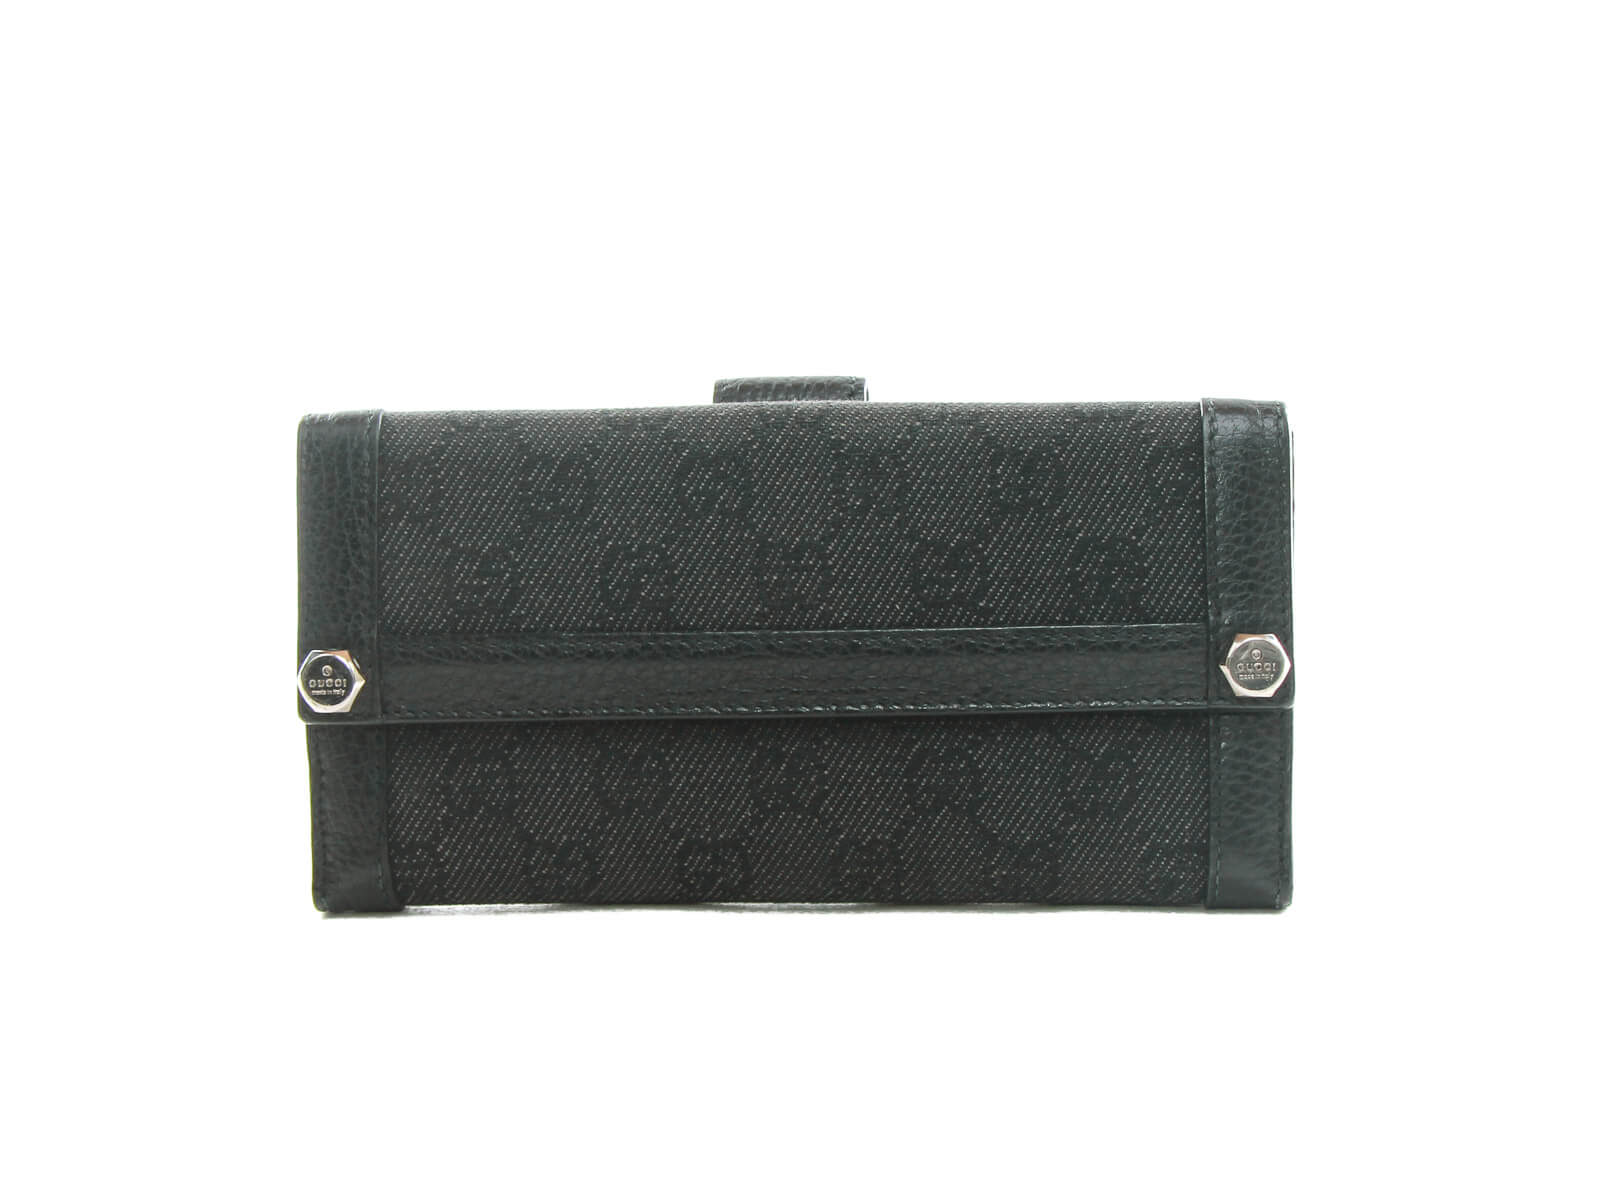 Authentic black monogram denim leather long wallet | Connect Japan